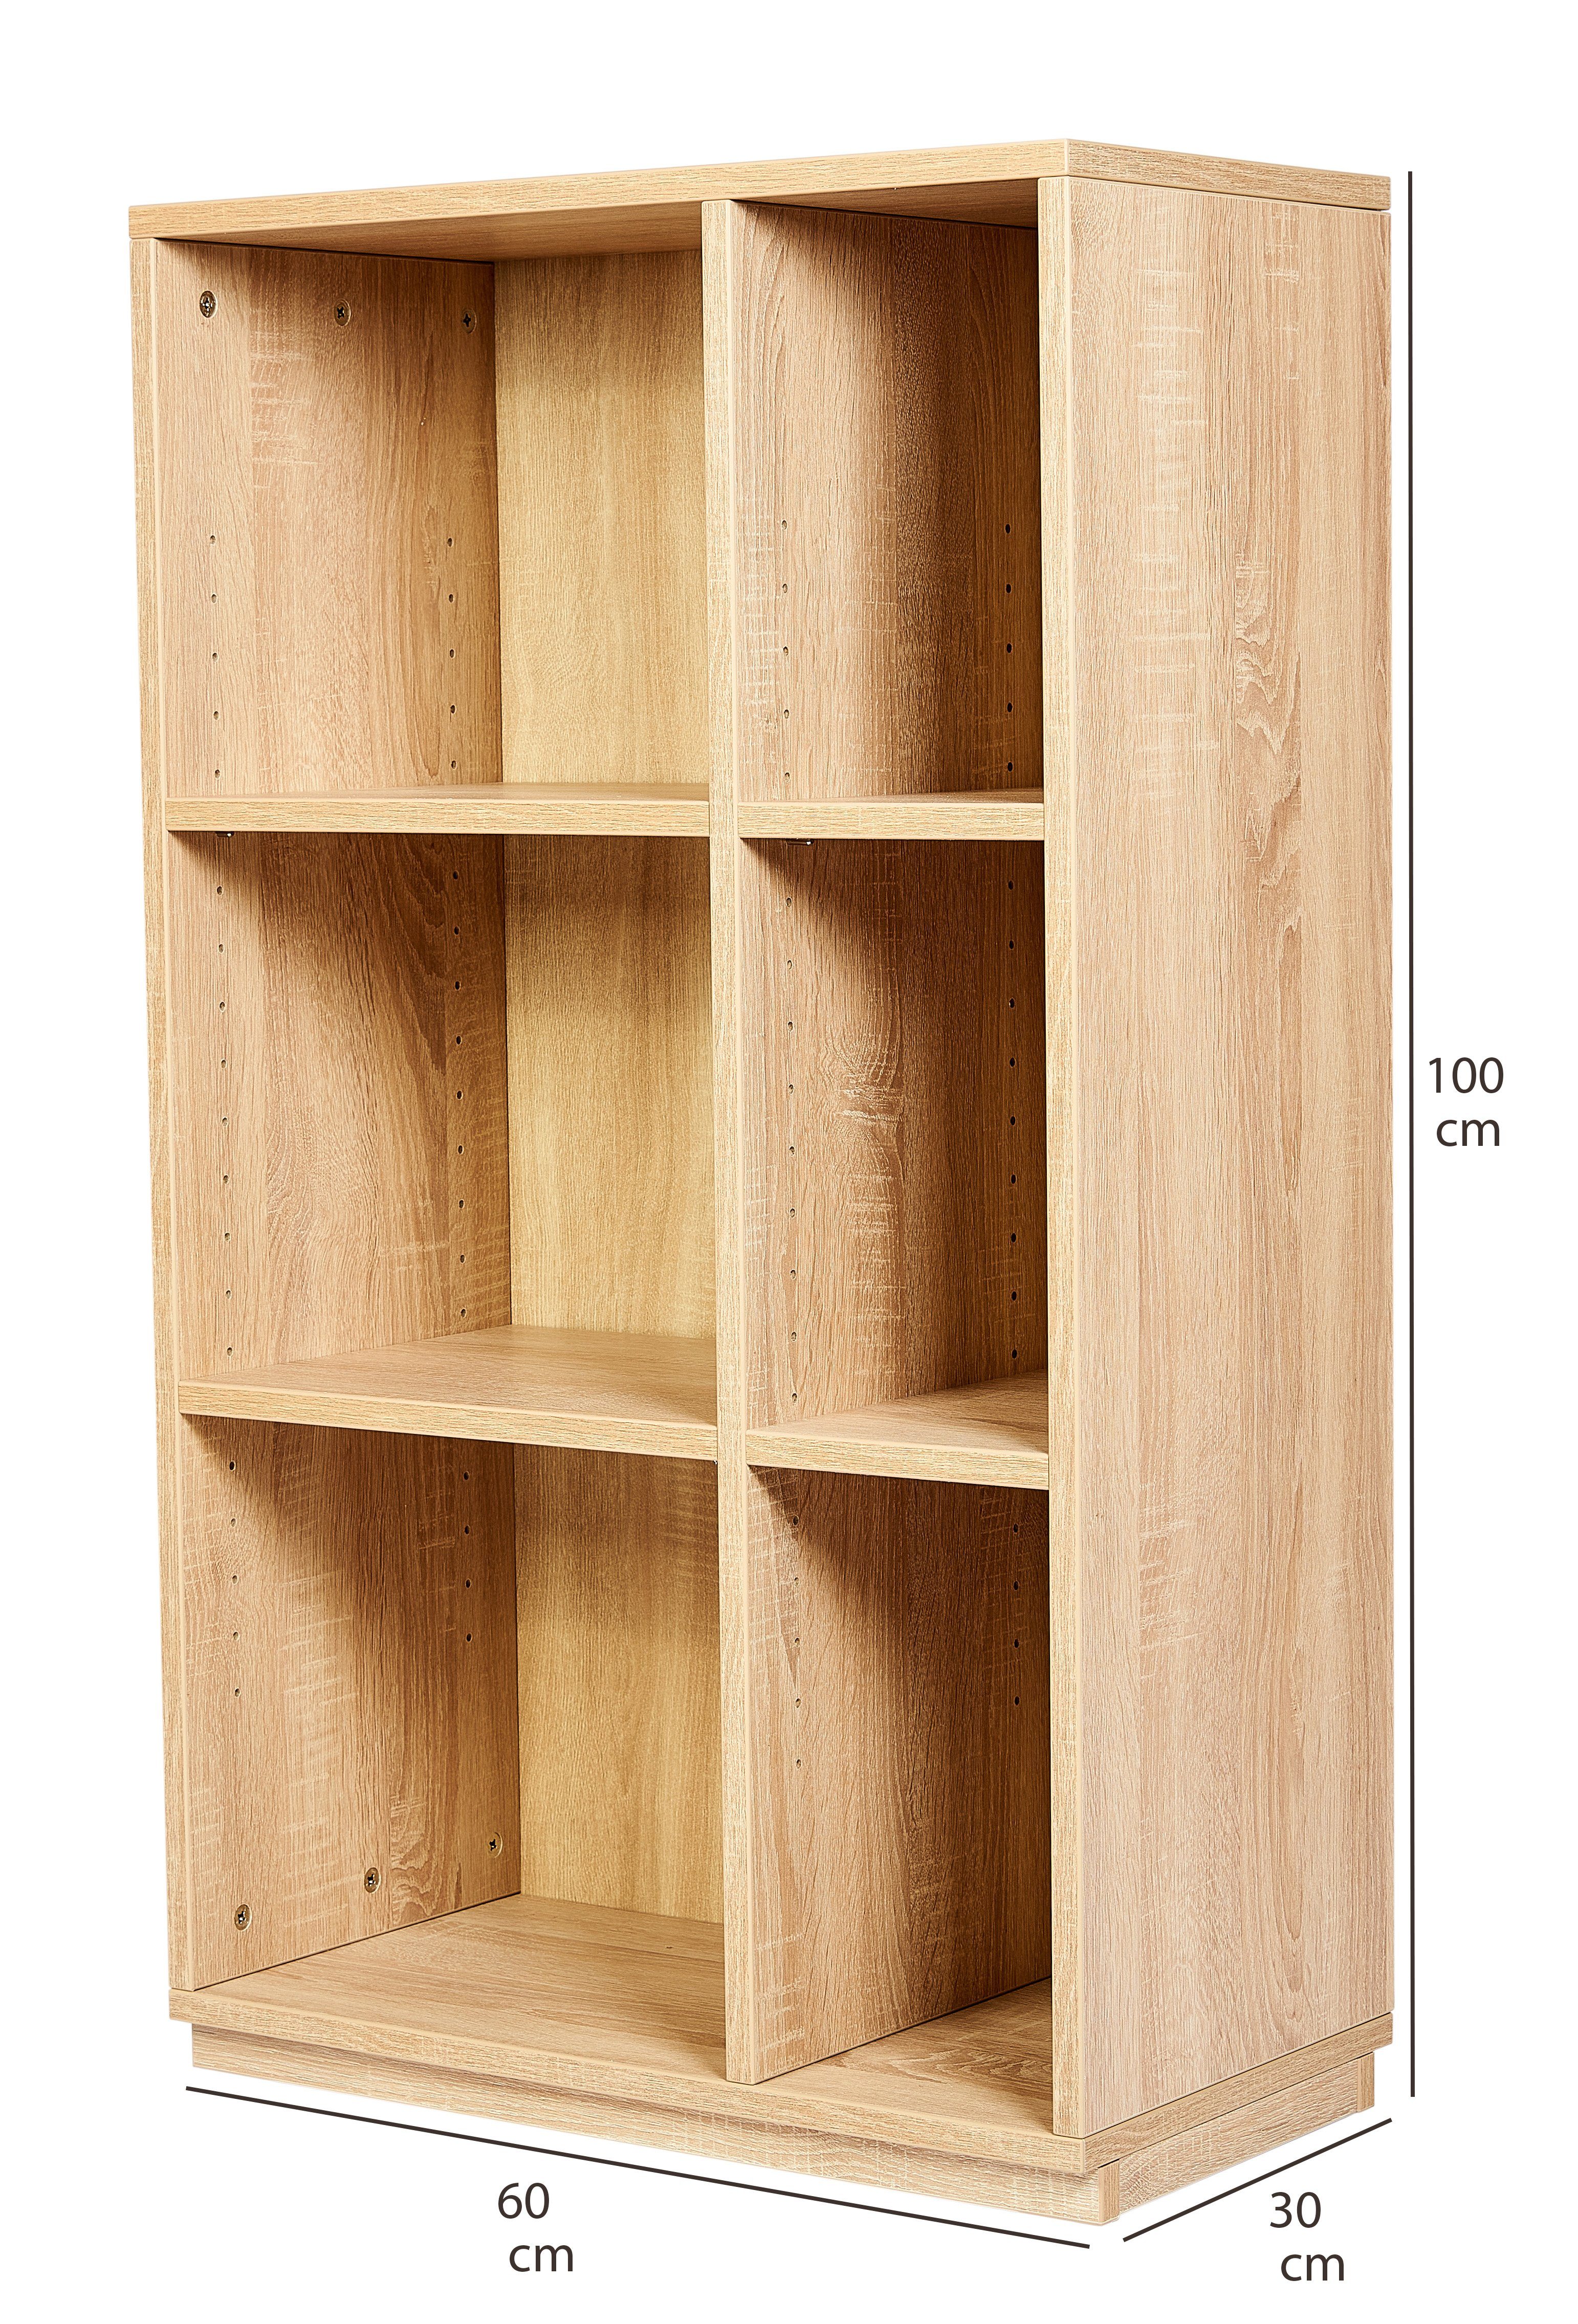 B H100 cm Regal oder T32, home 2 Premiumdekor Bücherregal mit Wohnzimmerregal Spalten Eiche 60, kundler